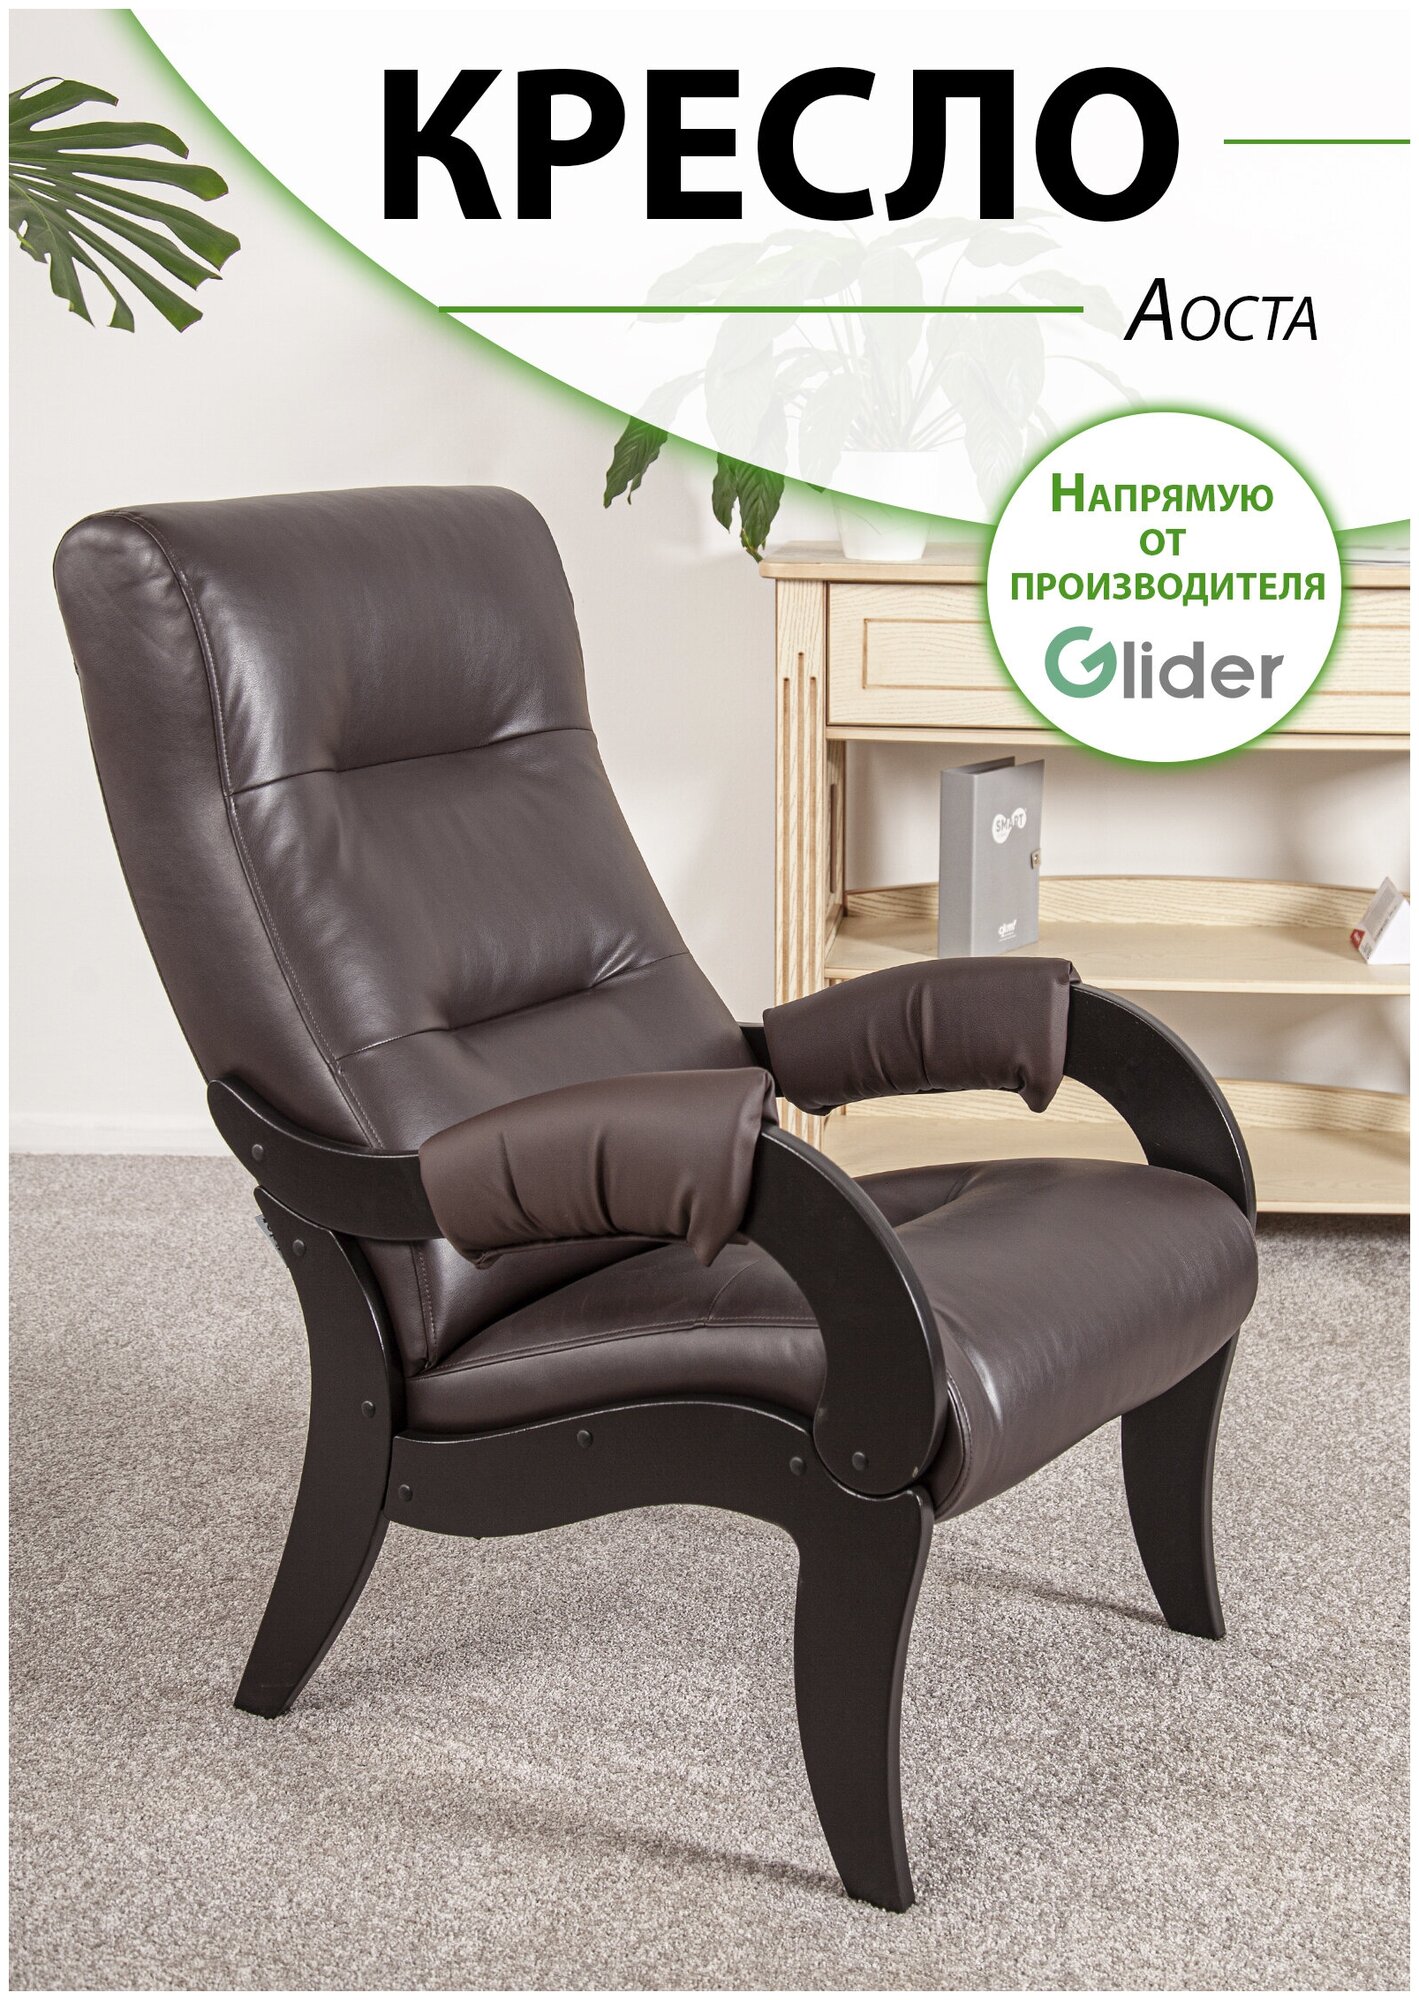 Кресло мягкое для дома и дачи Glider Аоста, цвет темно-коричневый, со спинкой для взрослых мягкое мебель для гостиной кухни прихожей дачи, в подарок